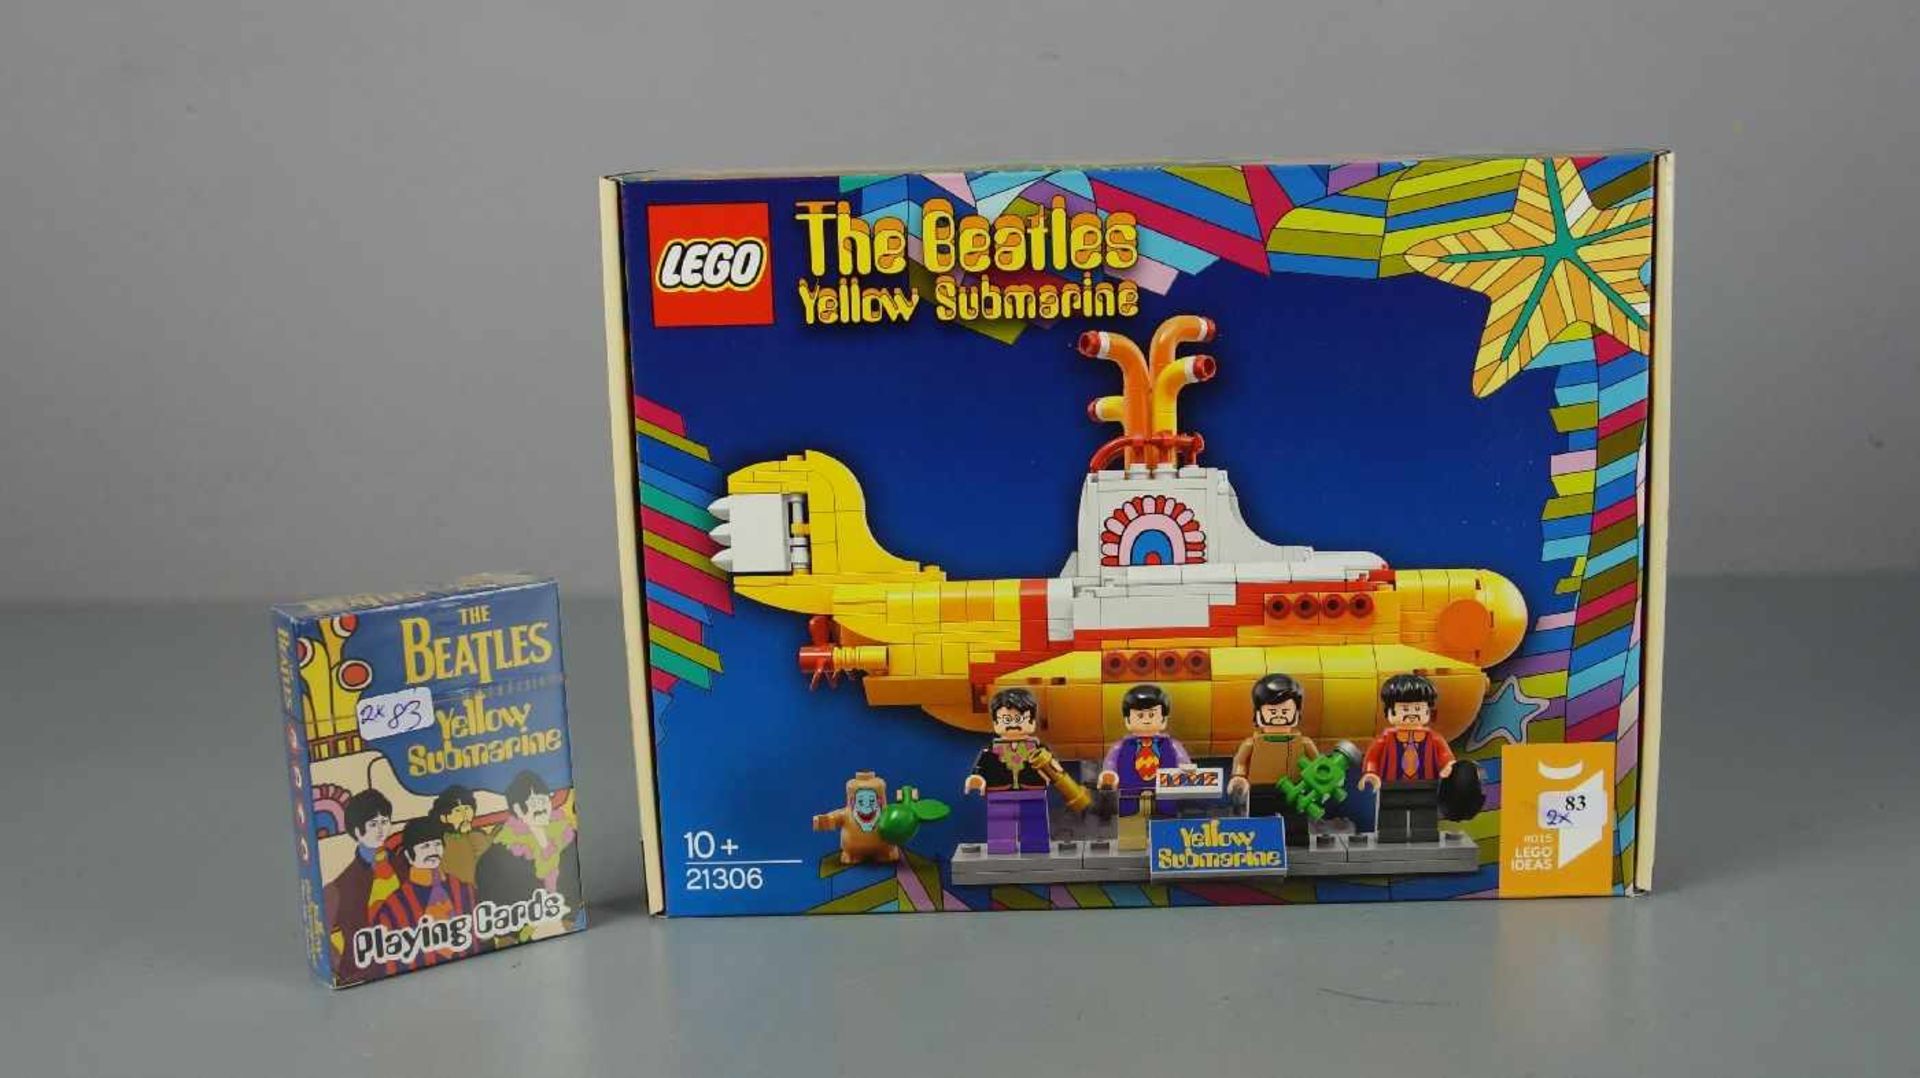 THE BEATLES MERCHANDISE / MEMORABILIA / SPIELZEUG: "Yellow Submarine" - Spielkarten und Lego U-Boot.